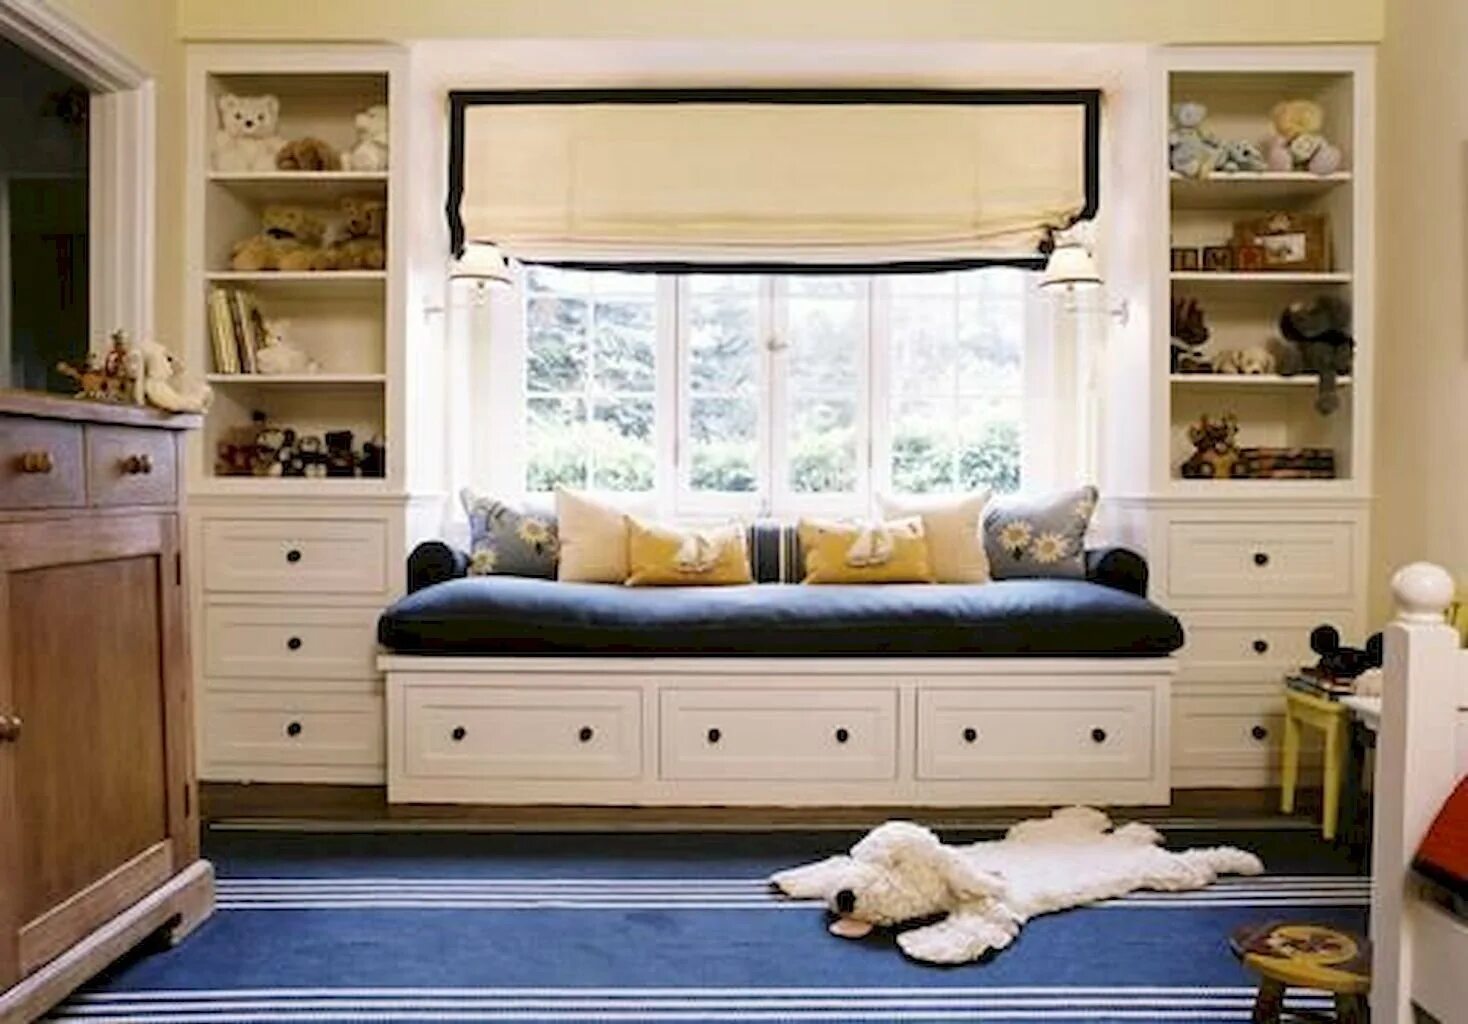 Подоконник диван в детской. Диванчик у окна в детской. Кровать вдоль окна. Мебель вокруг окна в комнате. Детского шкафа диваны